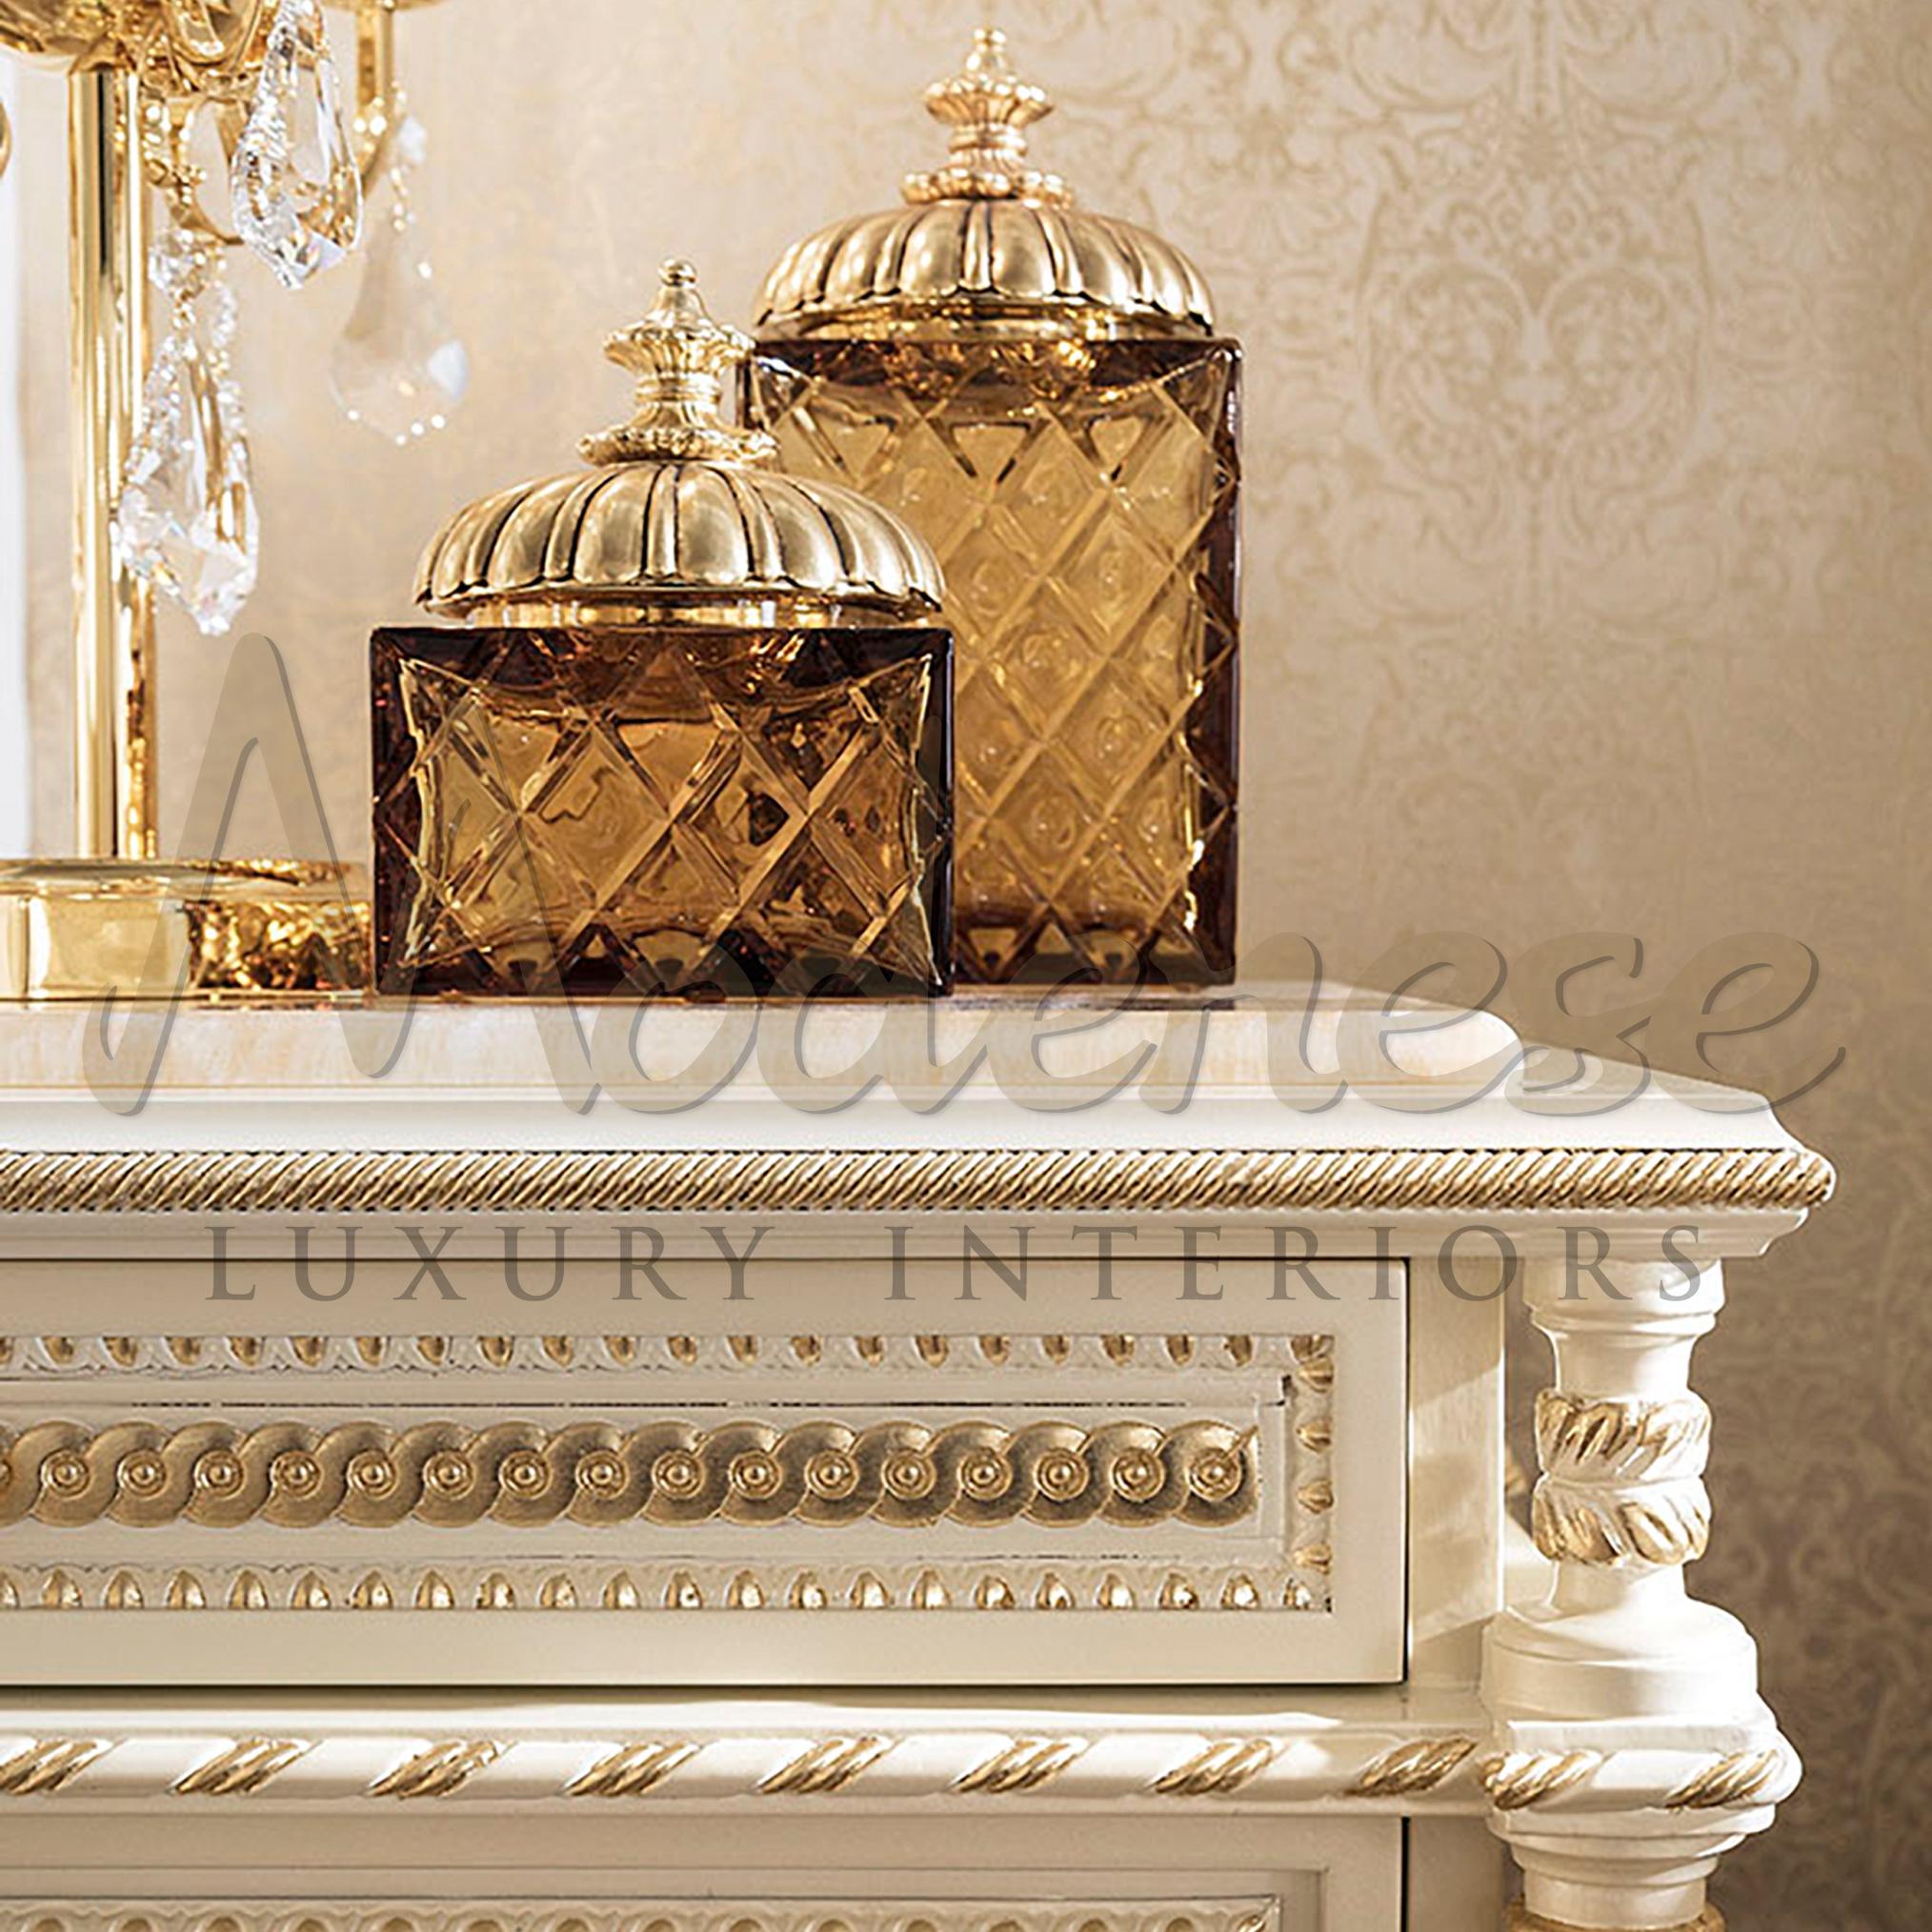 Luxuriöse Kommode im Empire-Stil von Modenese Luxury Interiors, einem italienischen Möbelhersteller. Aus Massivholz, weiß lackiert, mit geschnitzten Säulen im Empire-Stil, blattsilbernen Details und goldenen Knäufen. Die großen Vorteile dieses